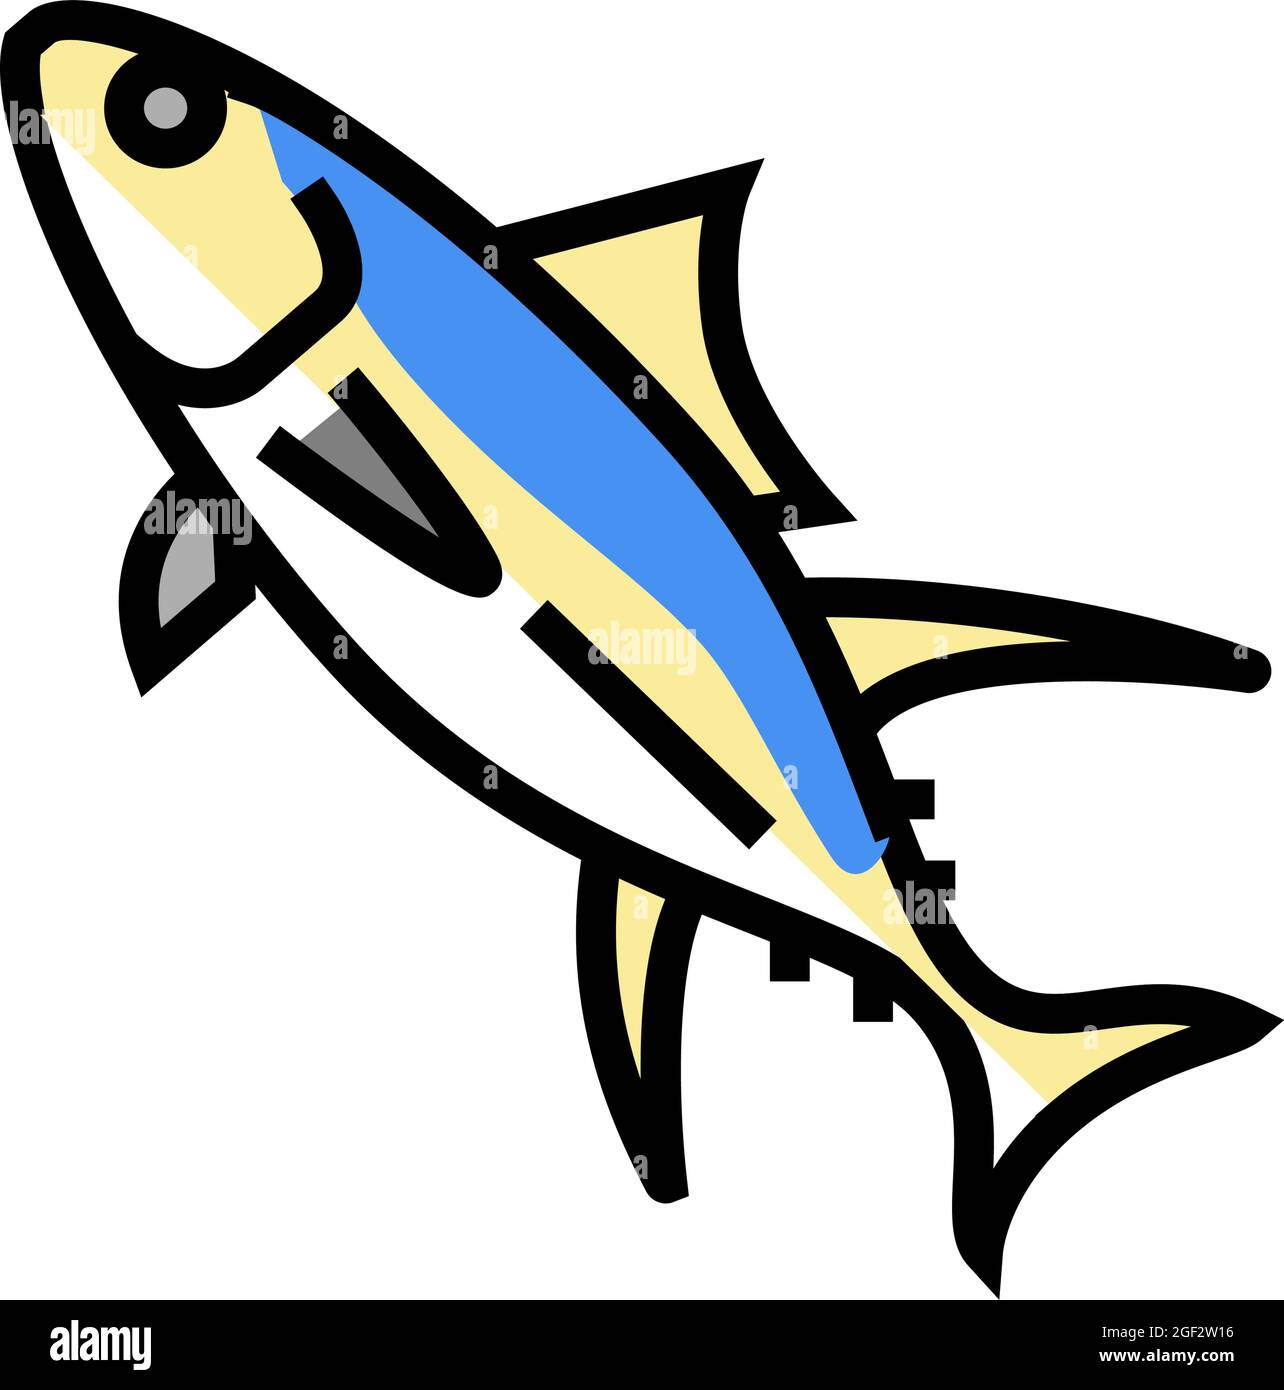 Abbildung des Symbols für gelbliche Thunfische Stock Vektor